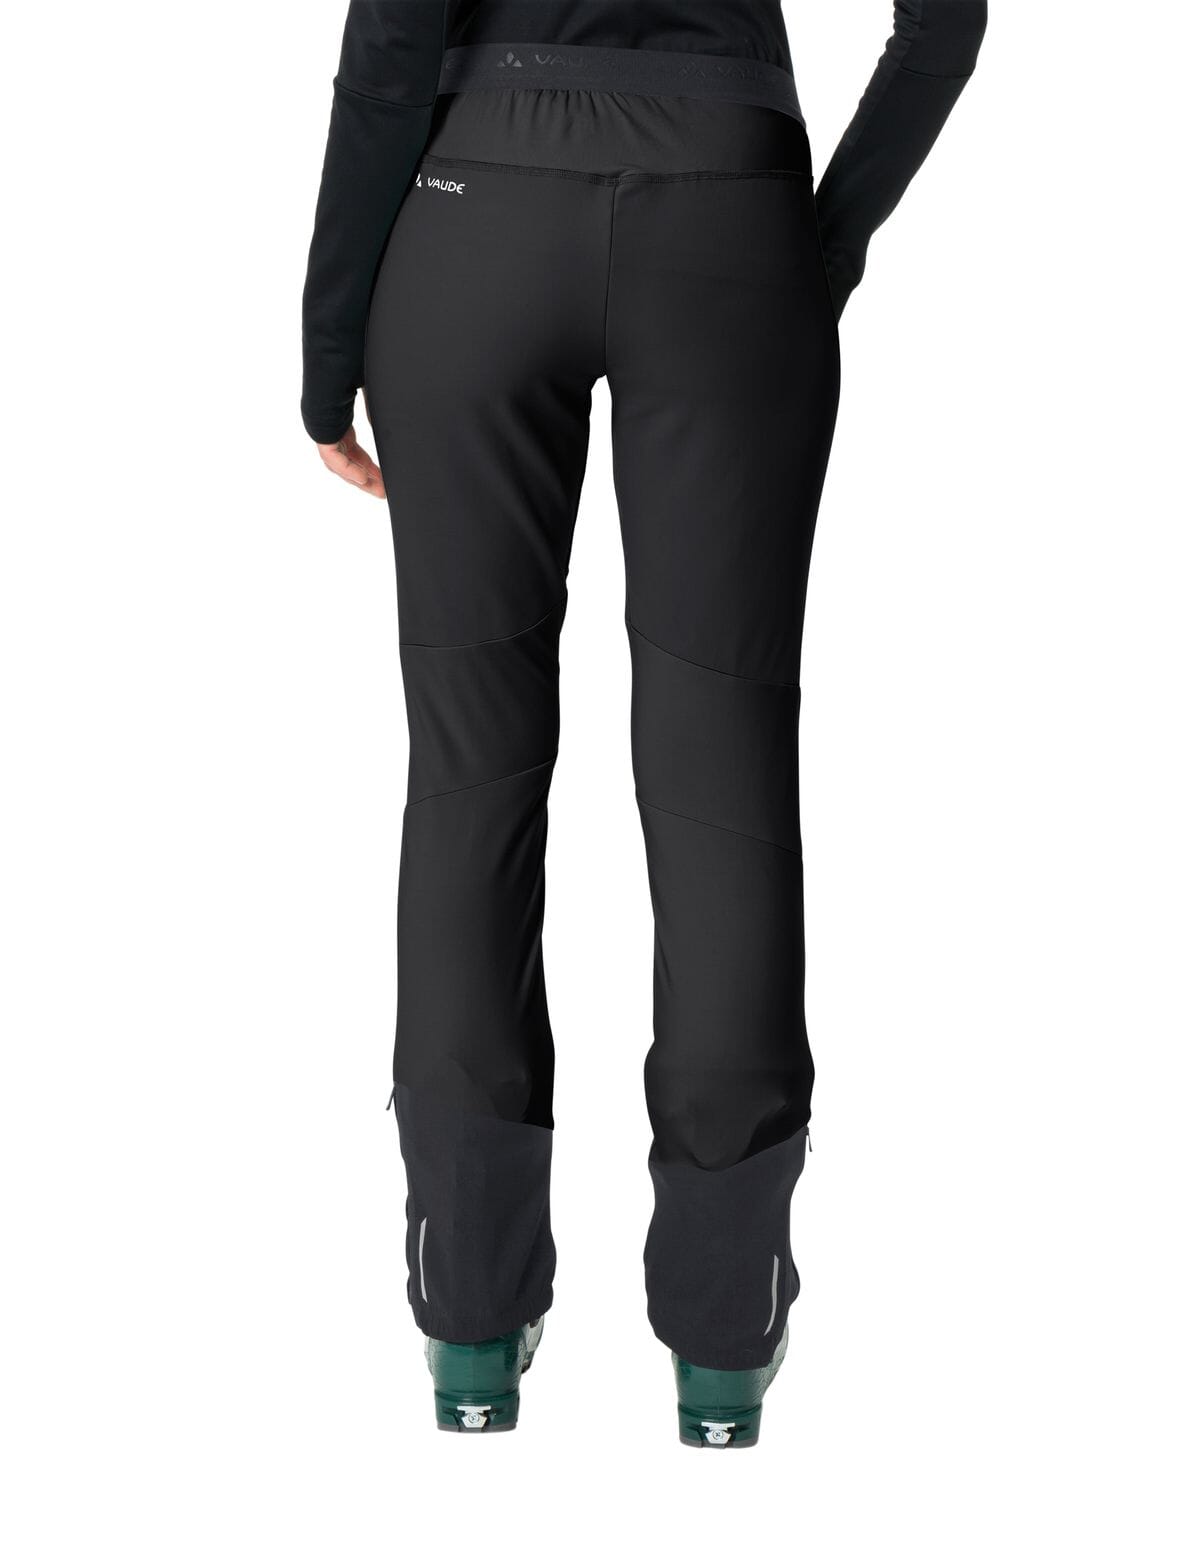 Vaude - W's Larice Light Softshell Pants III - Recycled Polyamide - Weekendbee - sustainable sportswear